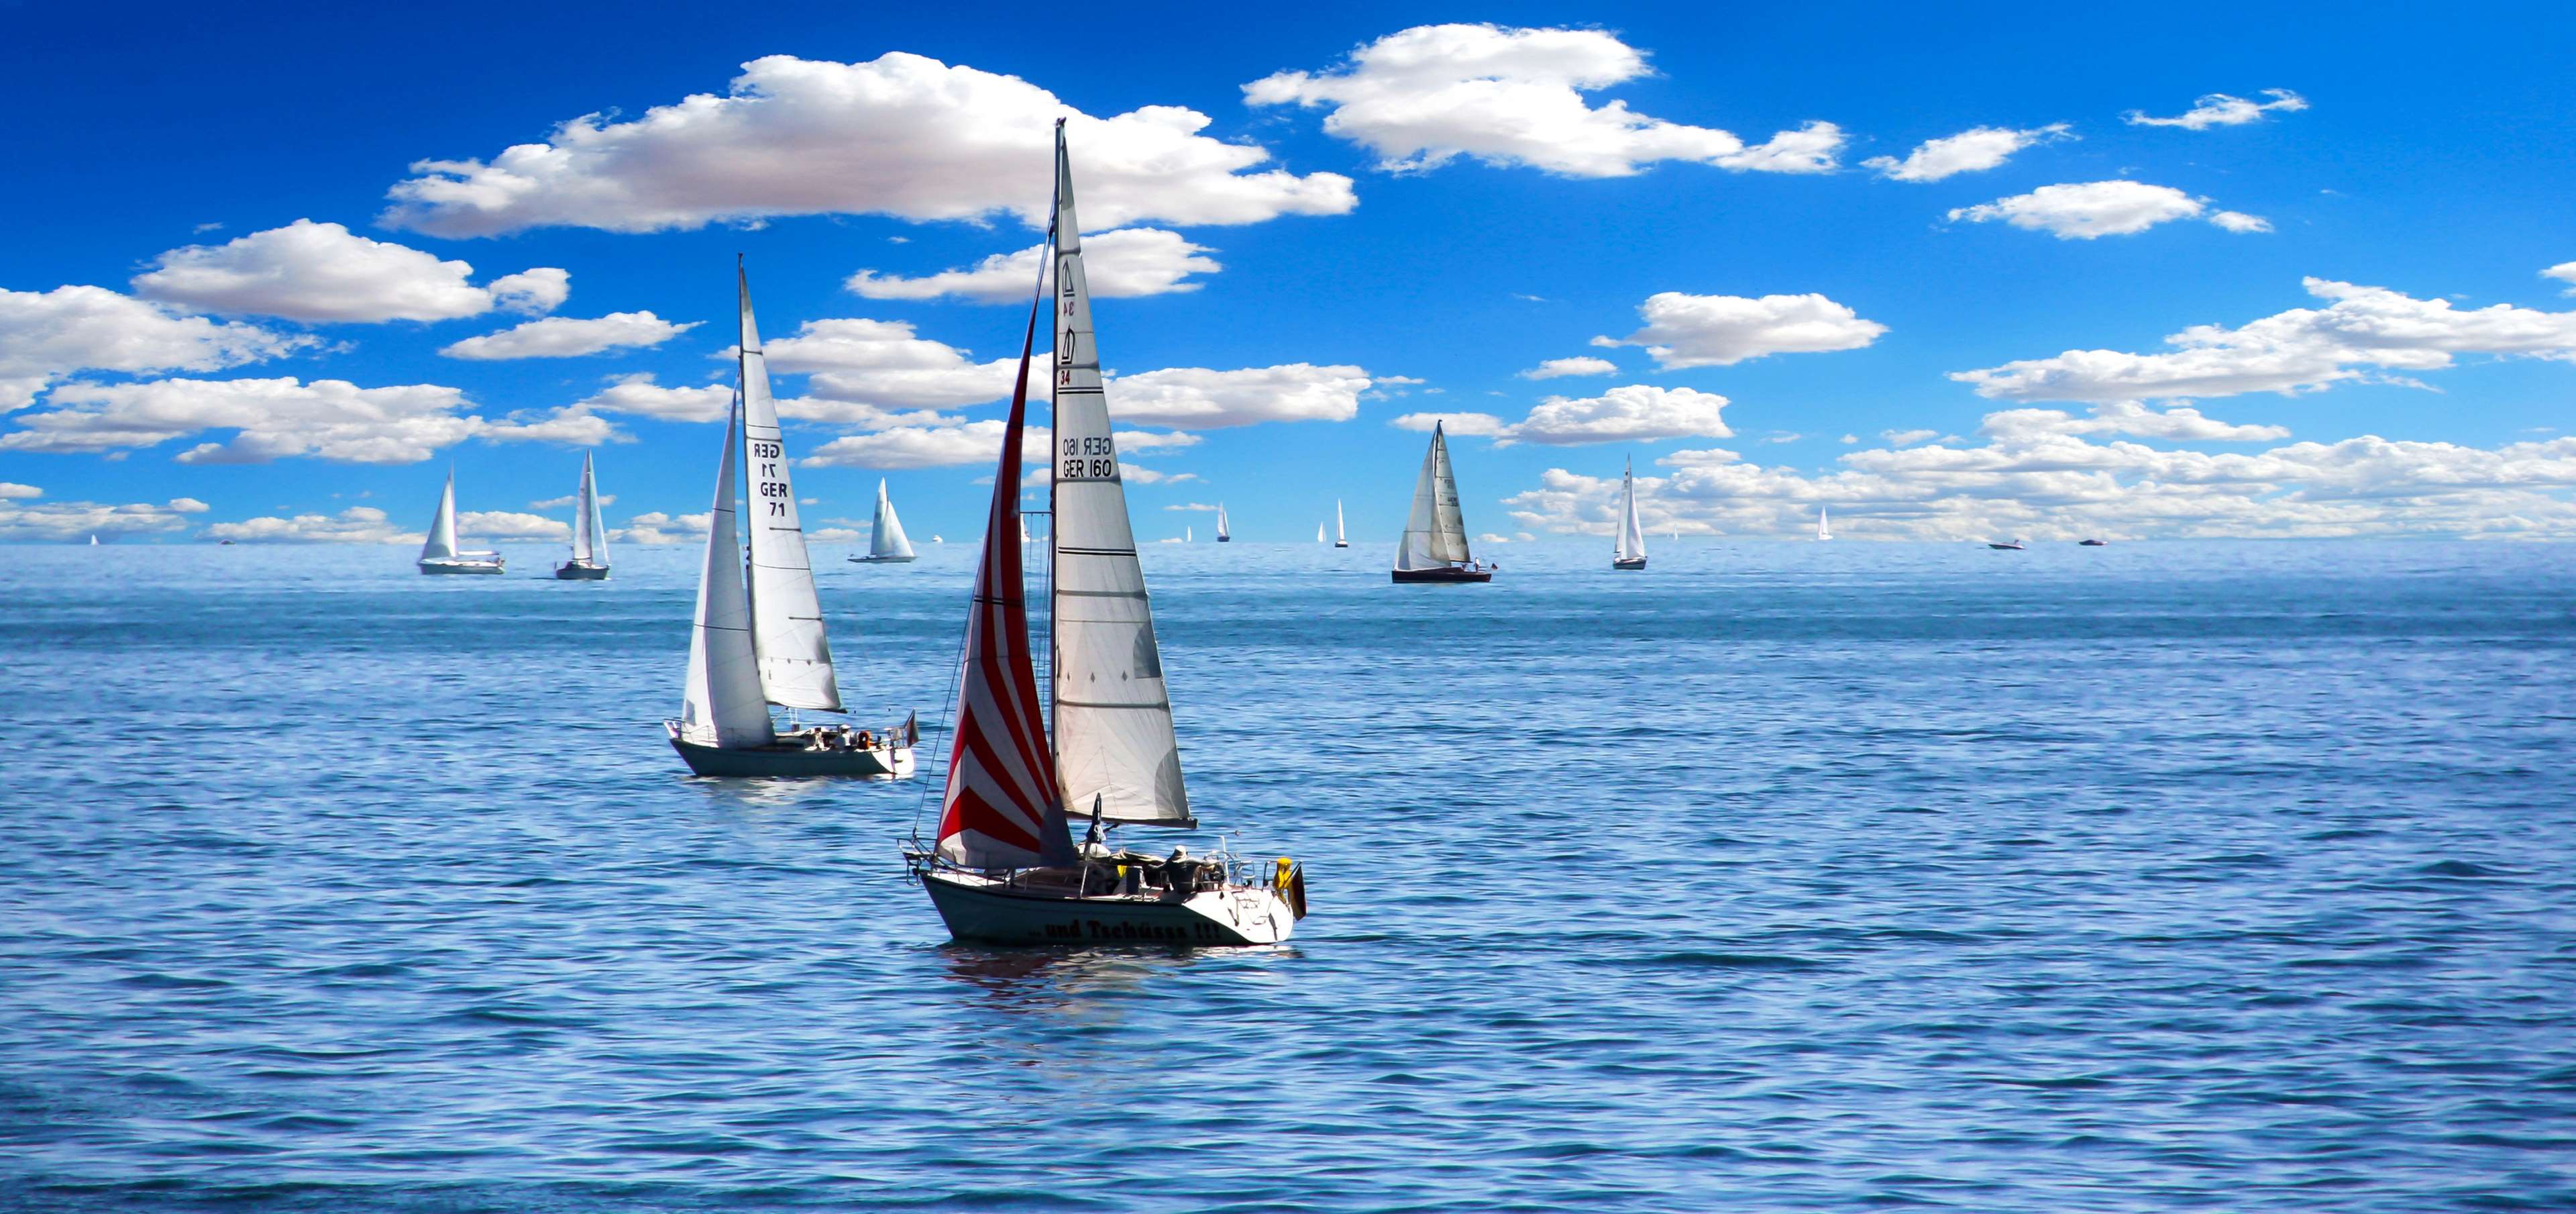 boats, clouds, ocean, sailboats, sailing, sea, water